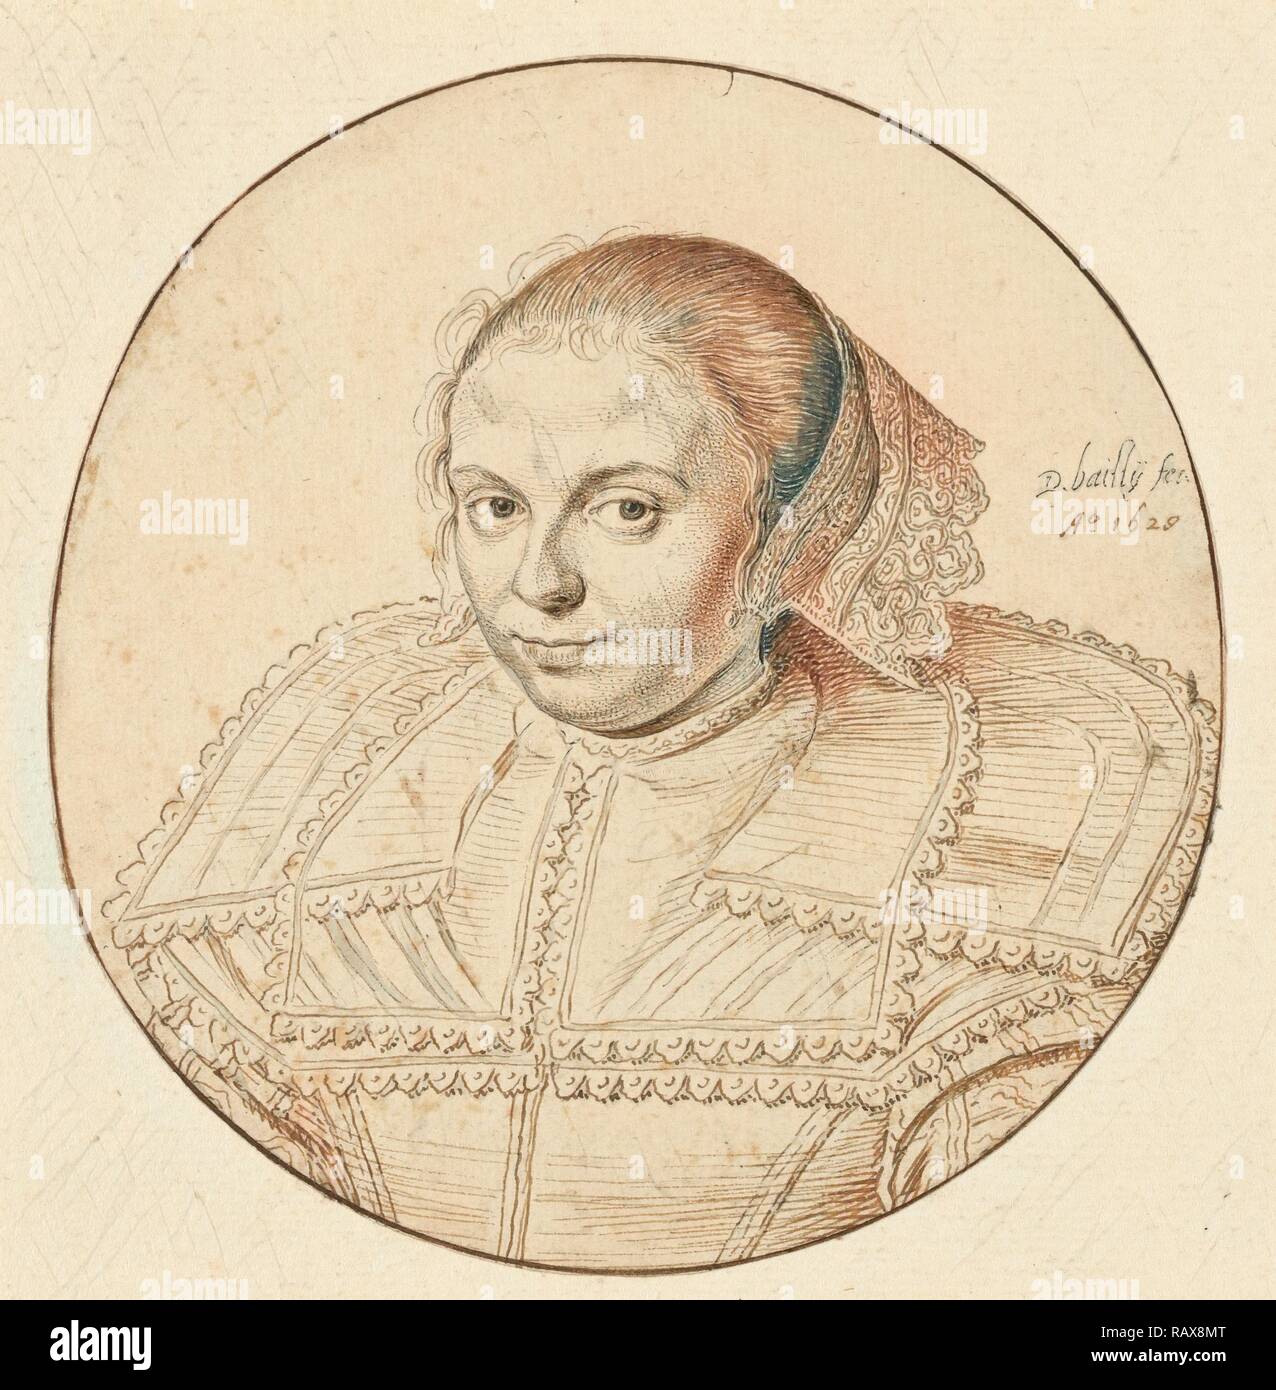 Ritratto di una donna, David Bailly, Olandese, 1584 - 1657, Paesi Bassi, Europa, 1629, penna e marrone chiaro e scuro inchiostro reinventato Foto Stock